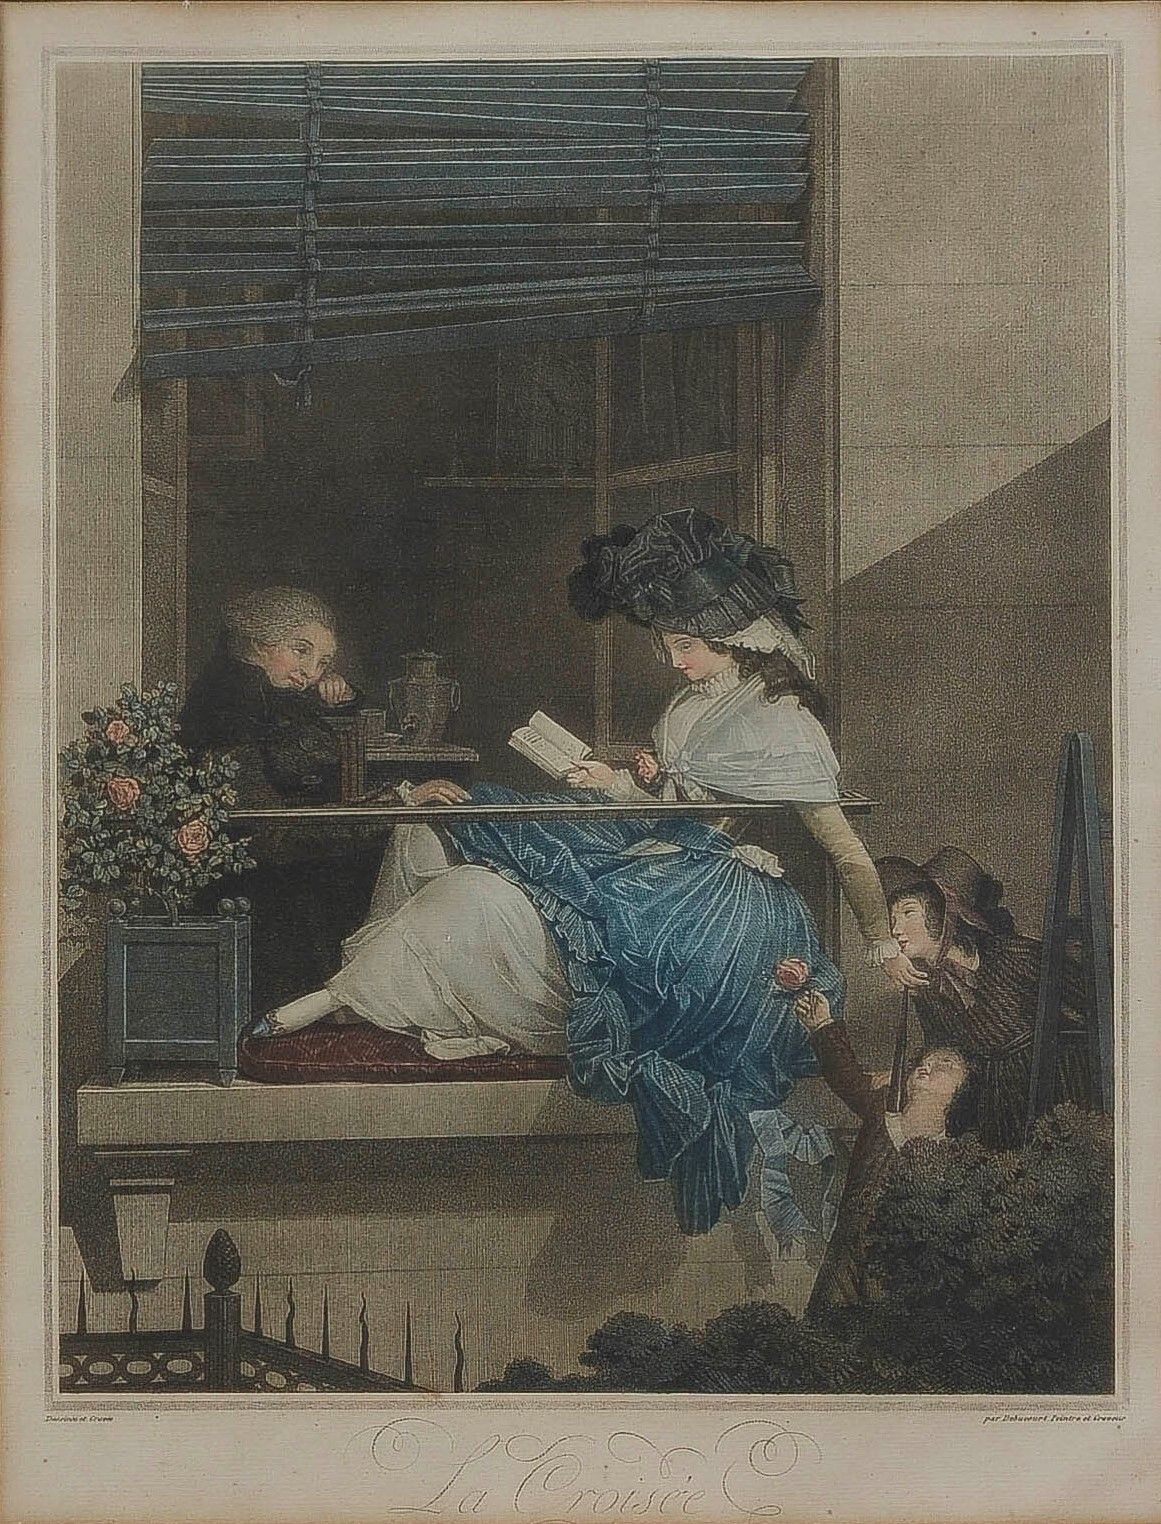 Null 菲利贝尔-路易-德布库尔 (1755-1832)

頝甇

水印。黑板的证明，用水彩画加强。

费奈尔 28

40.5 x 32 cm (展出时：4&hellip;